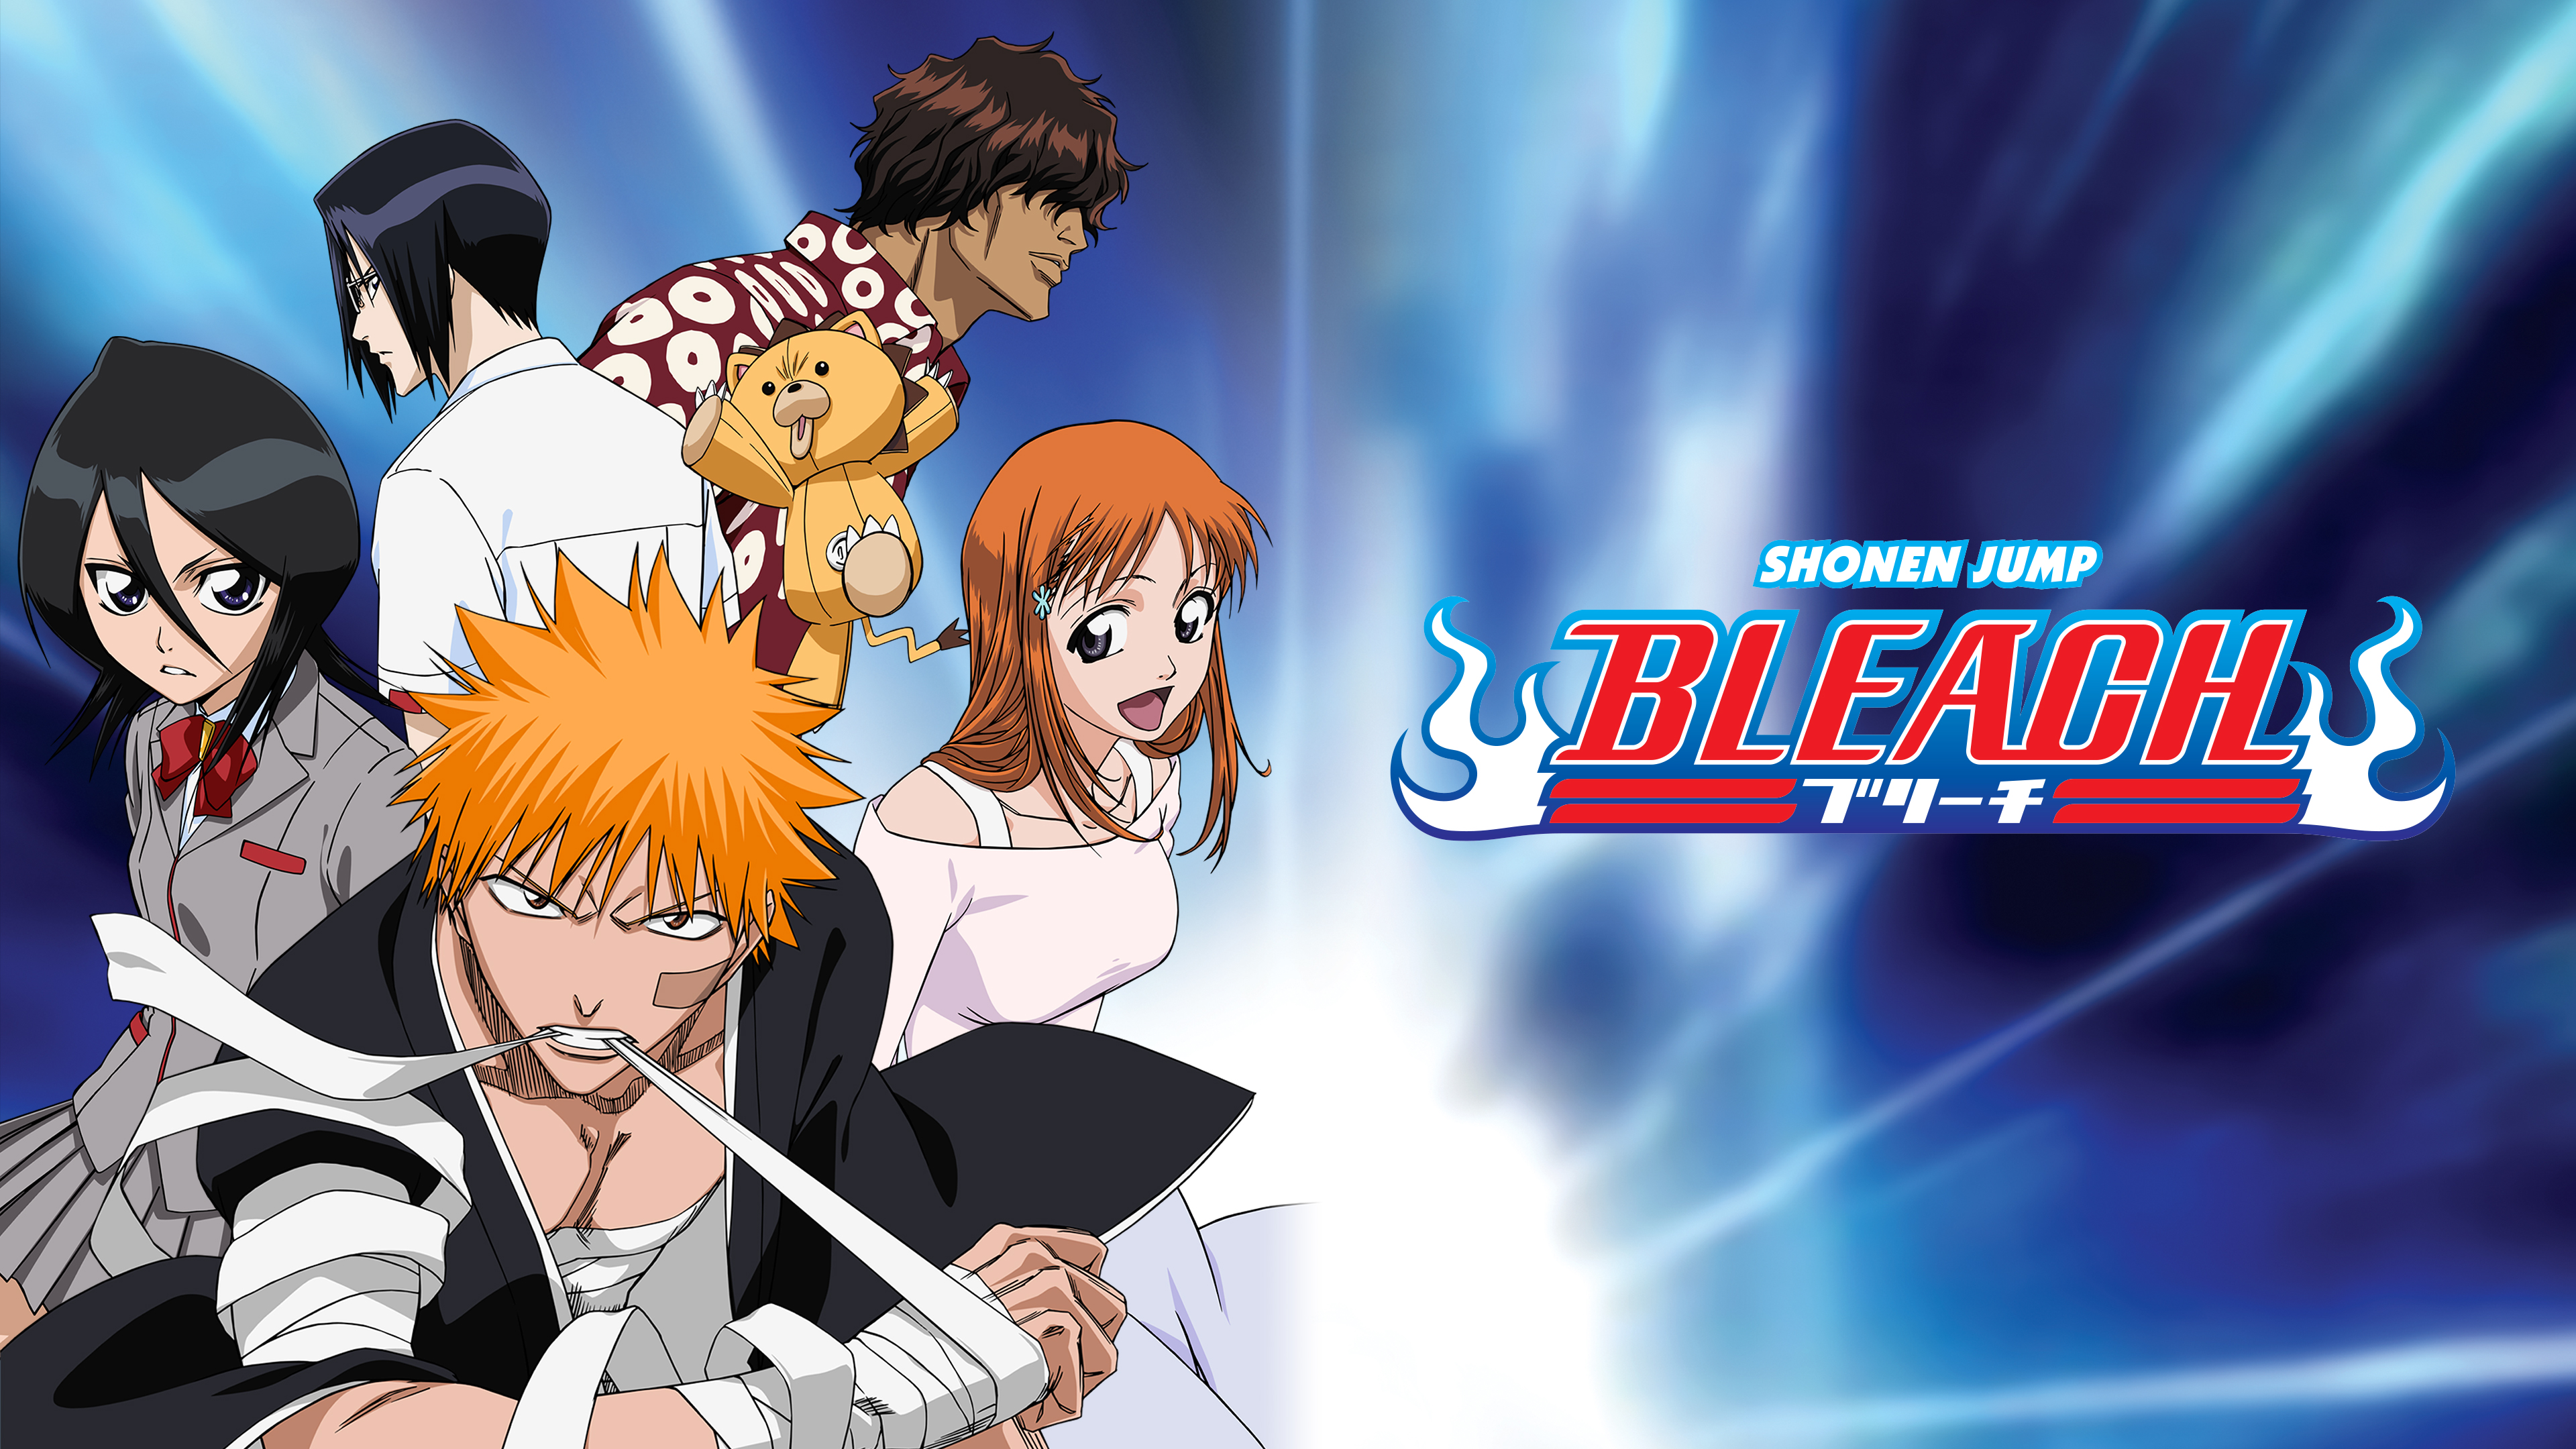 Watch Bleach Season 1 Episode 58 Sub Dub Anime Uncut Funimation